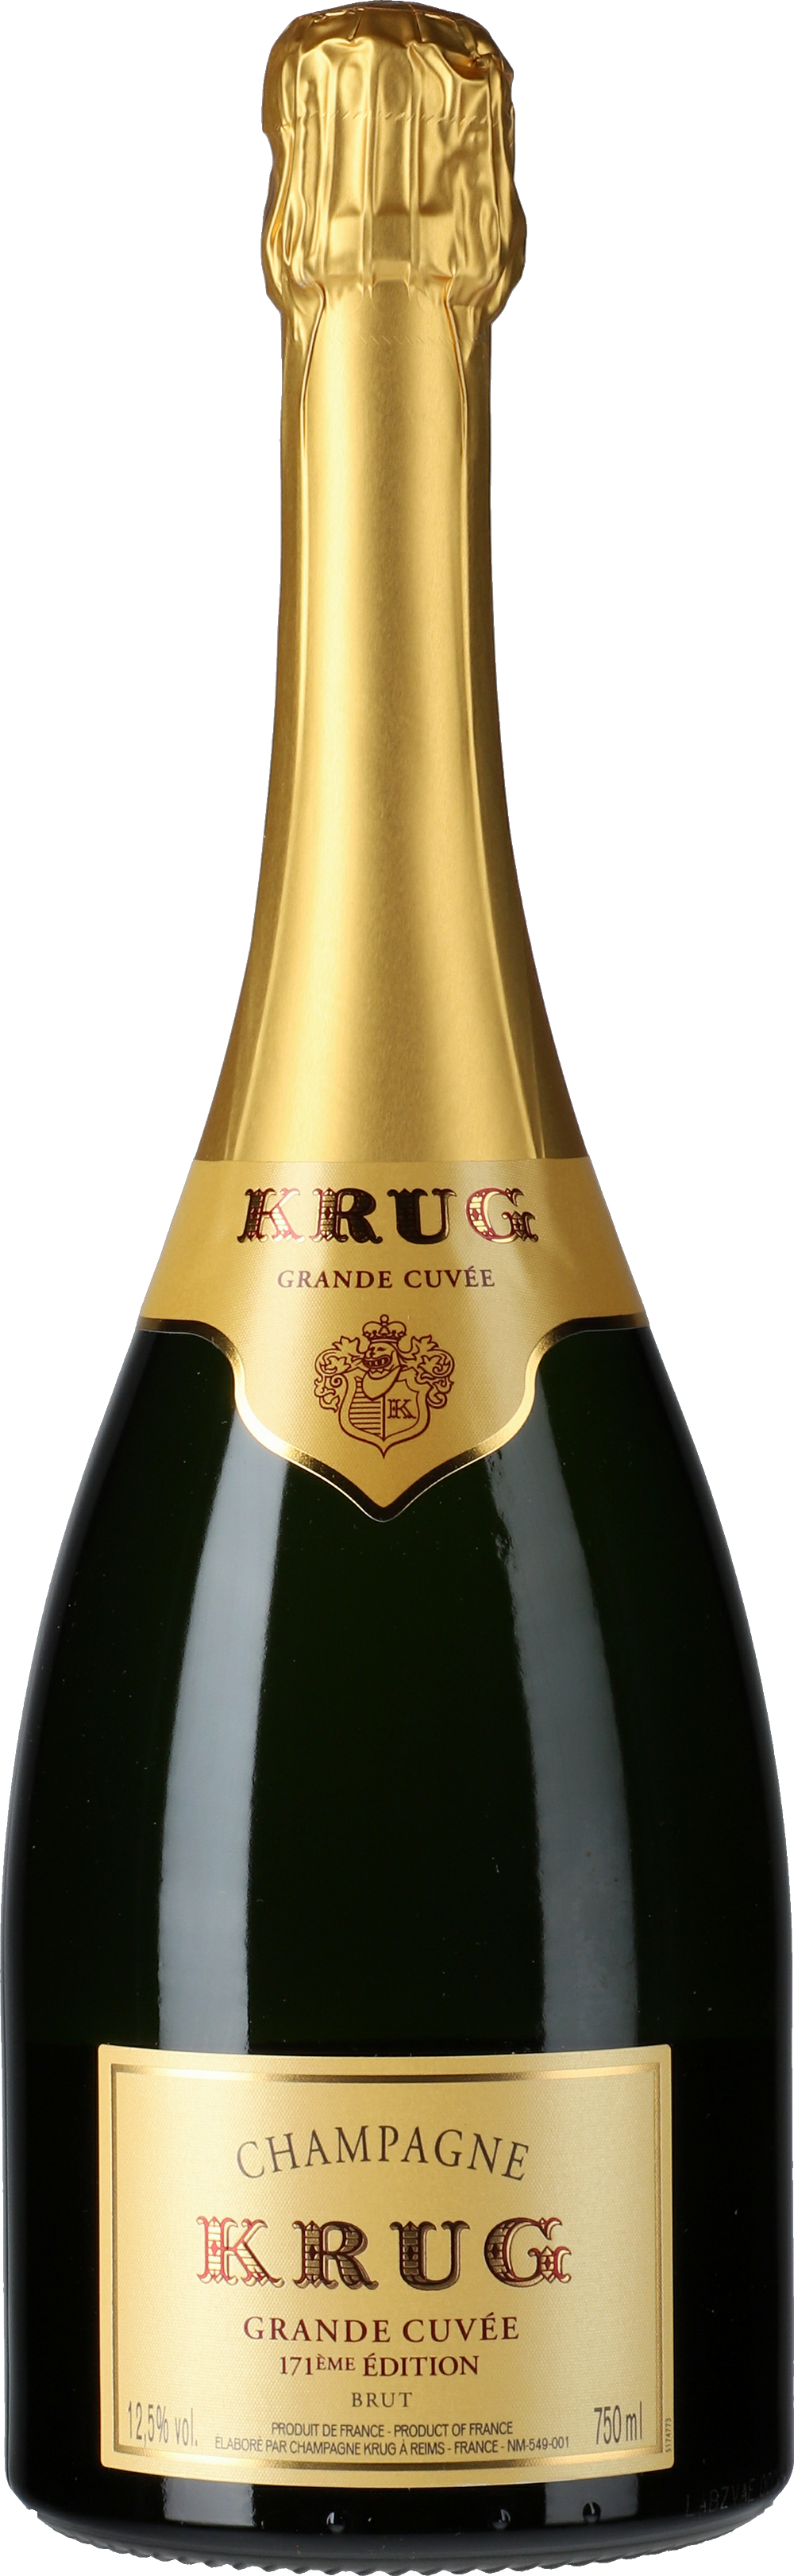 Weine Krug: Lobenbergs Grande - Gute Brut 171 Édition Cuvée Champagne